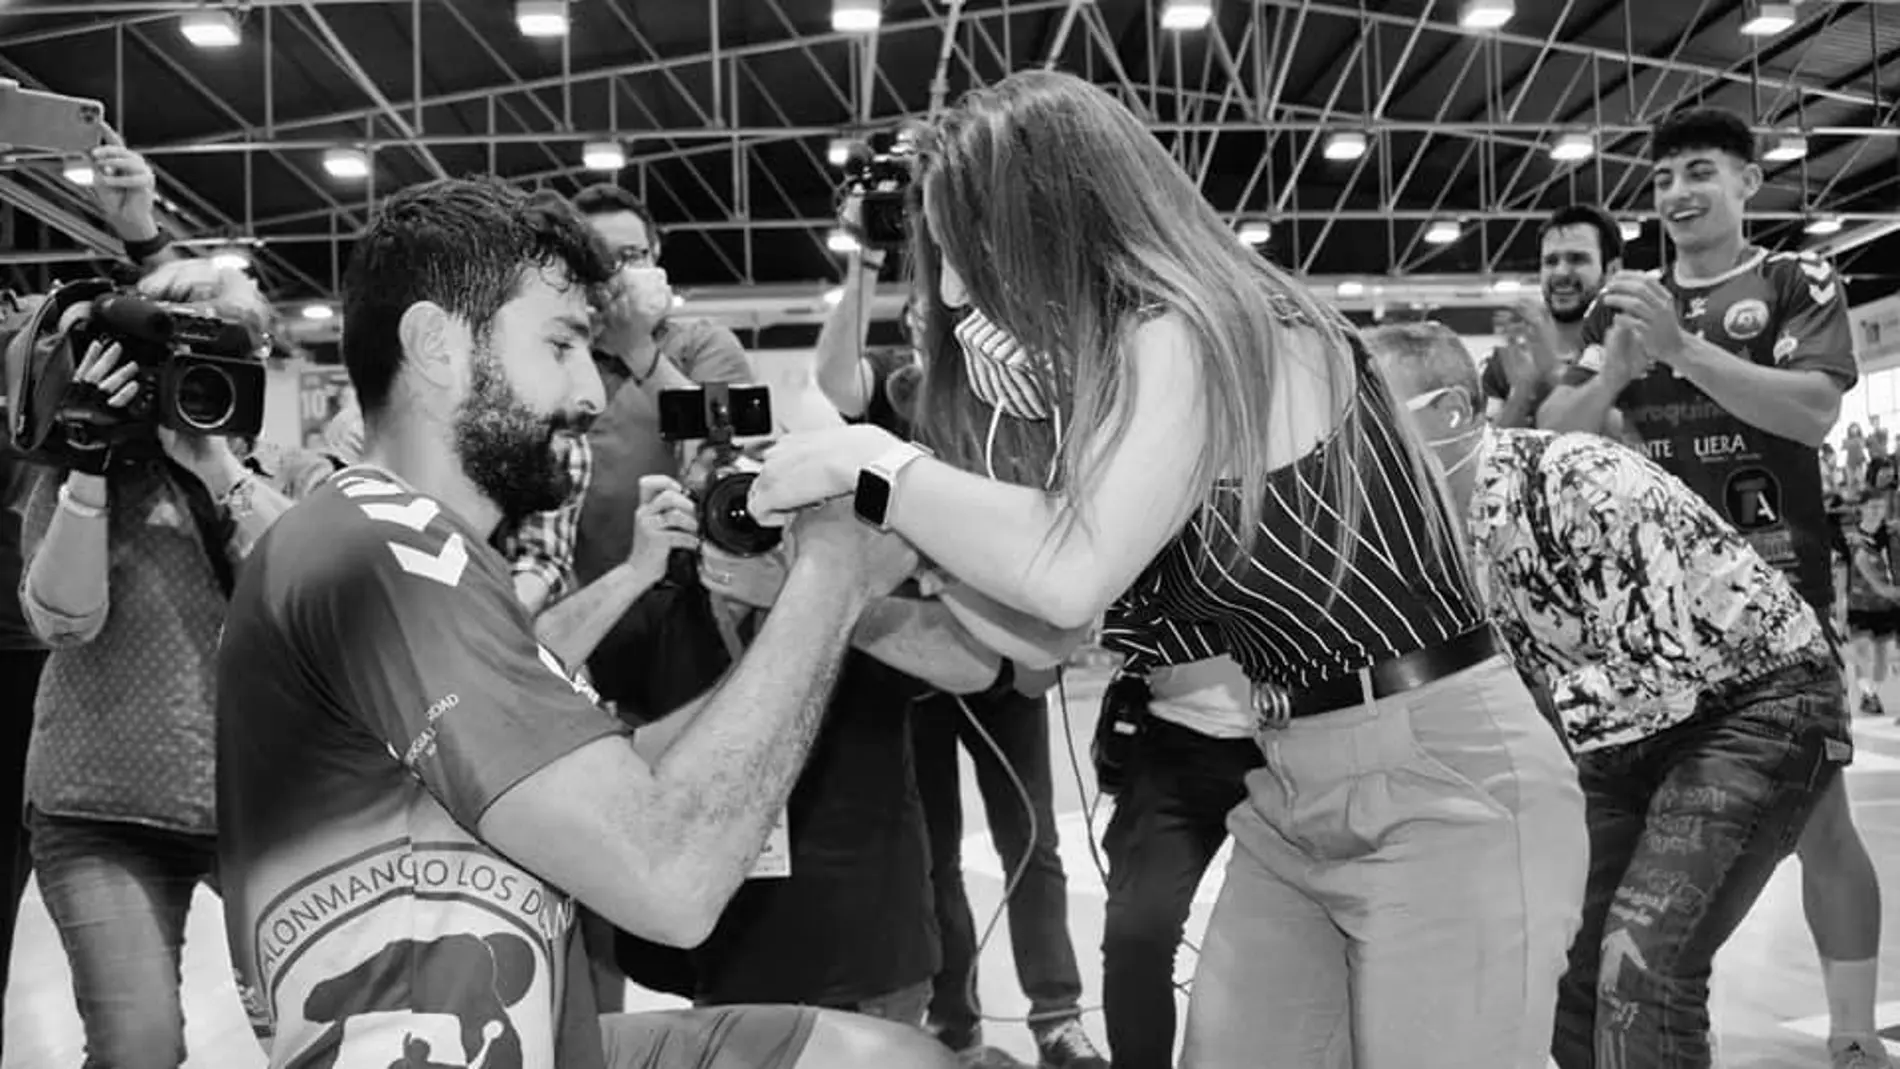 Nacho Del Castillo, jugador del Iberoquinoa, pide matrimonio a su pareja en plena celebración por el ascenso a la Asobal